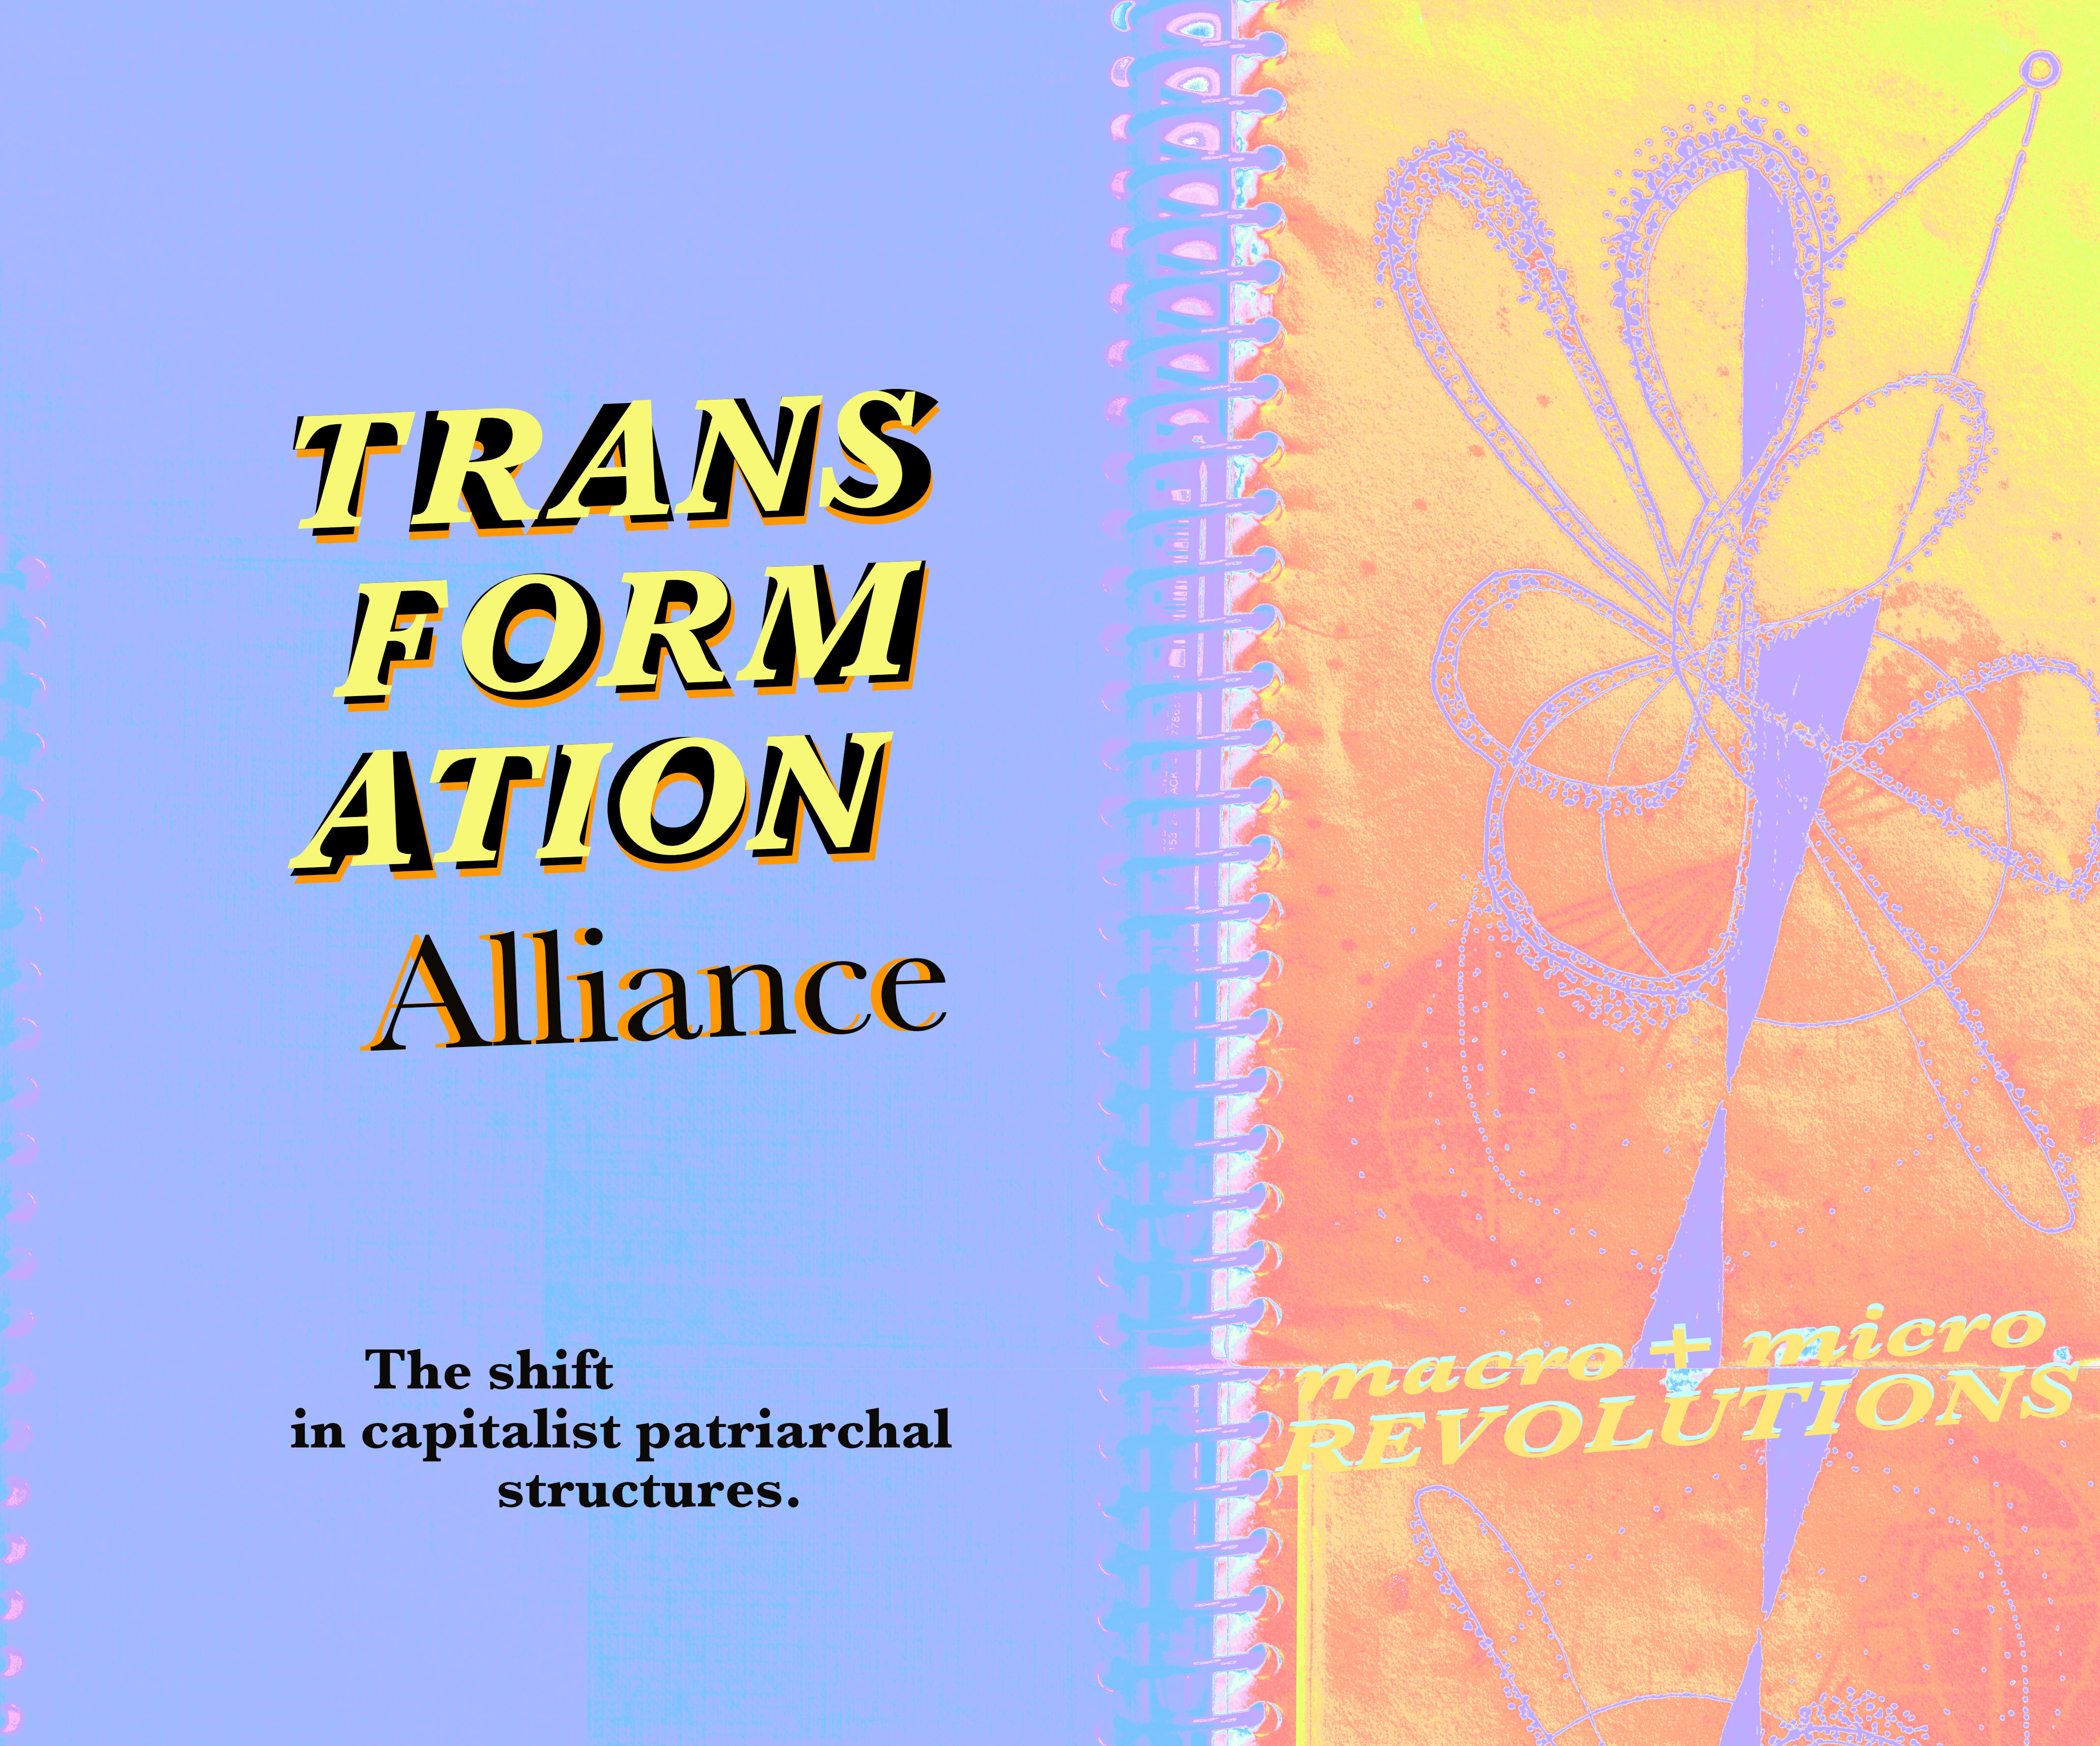 Transformation Alliance